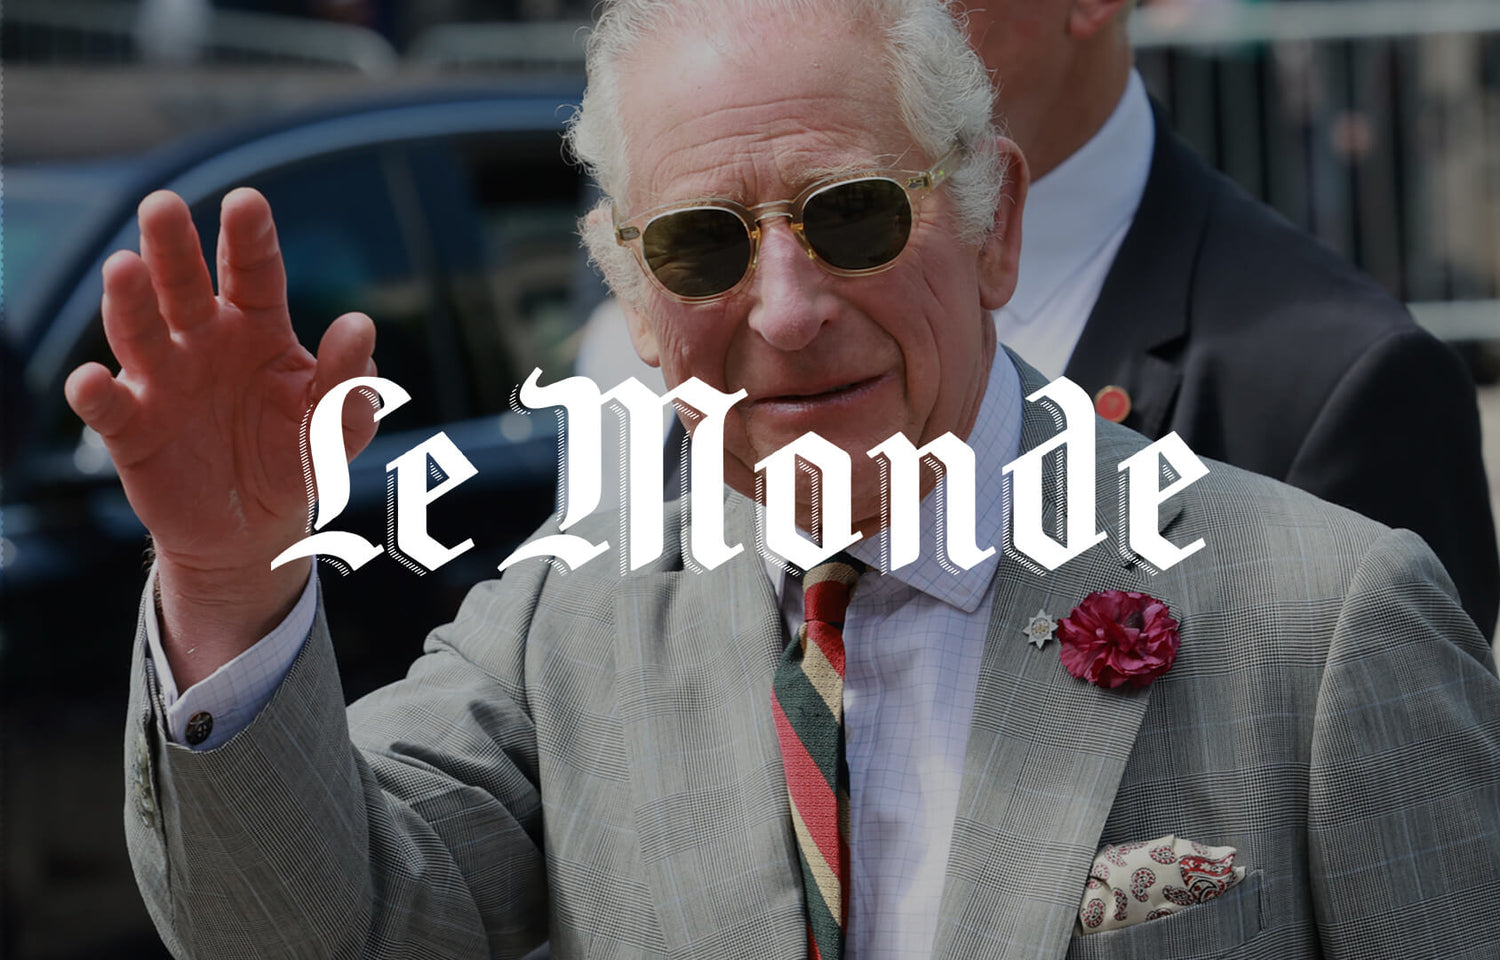 Ooh La La! Le Monde Adores King Charles III in MOSCOT